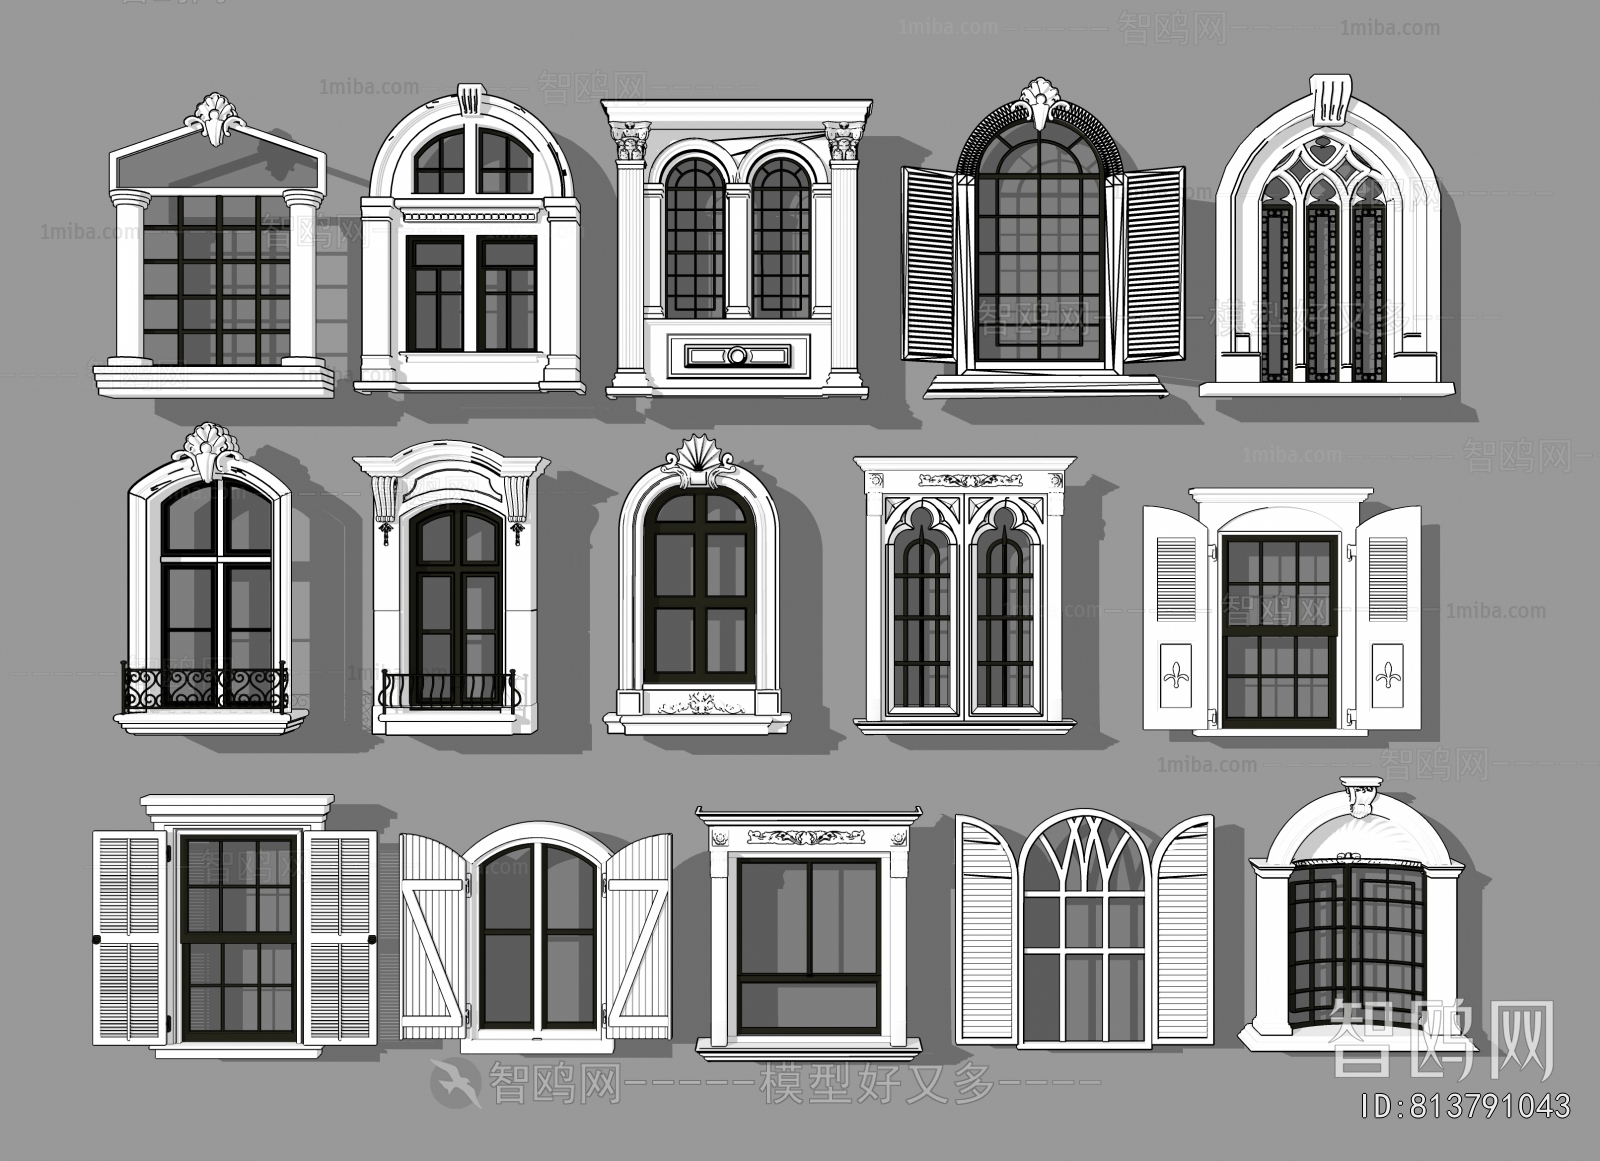 European Style Window